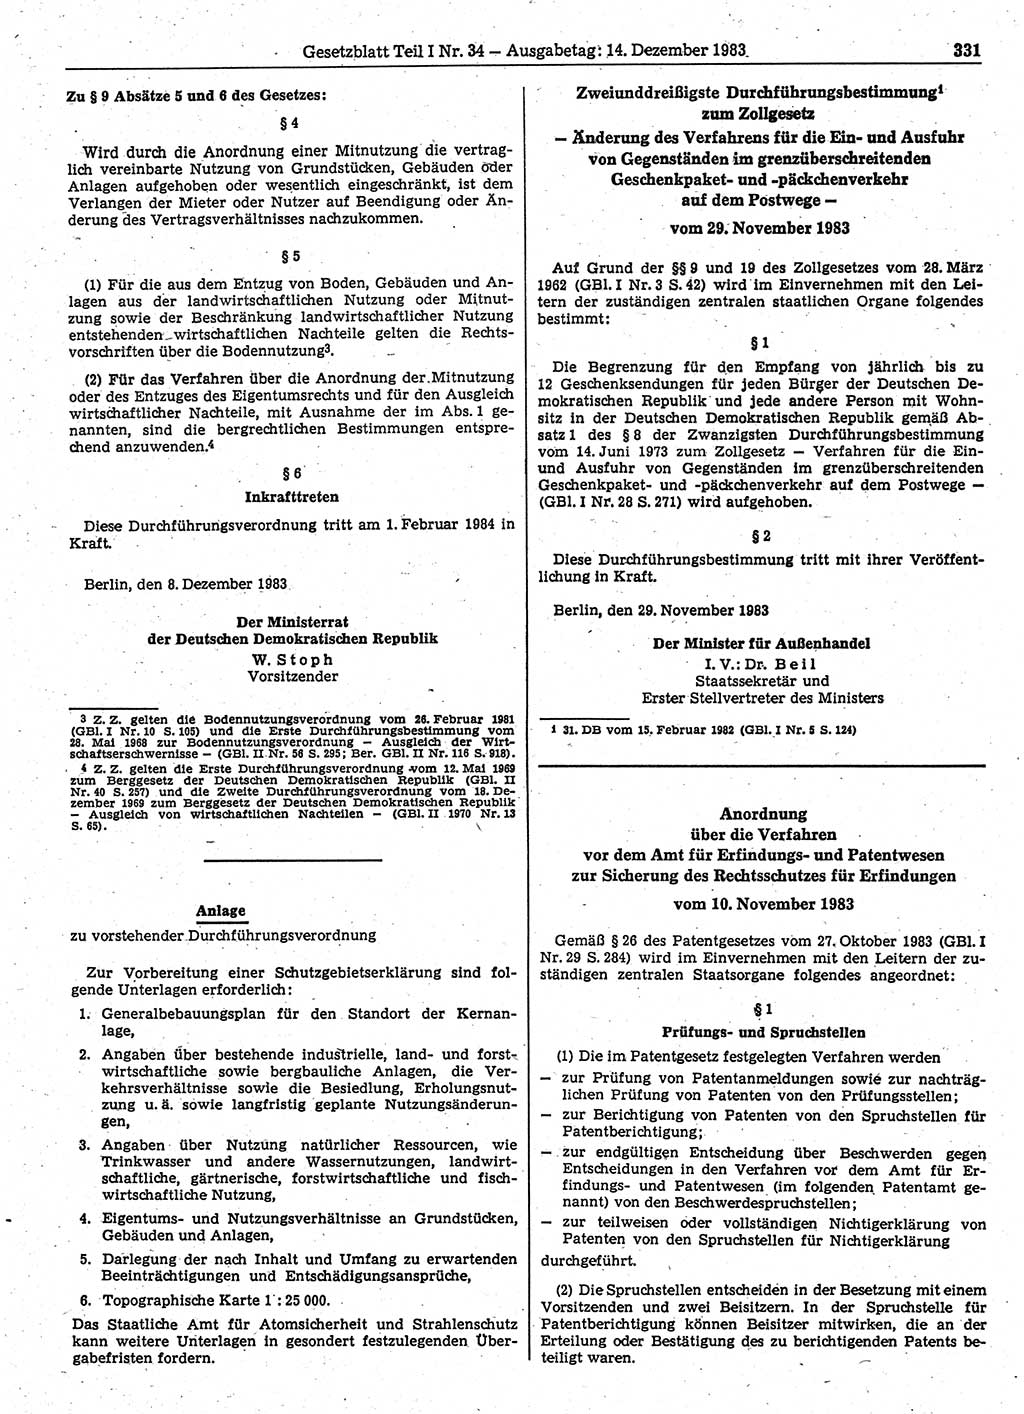 Gesetzblatt (GBl.) der Deutschen Demokratischen Republik (DDR) Teil Ⅰ 1983, Seite 331 (GBl. DDR Ⅰ 1983, S. 331)